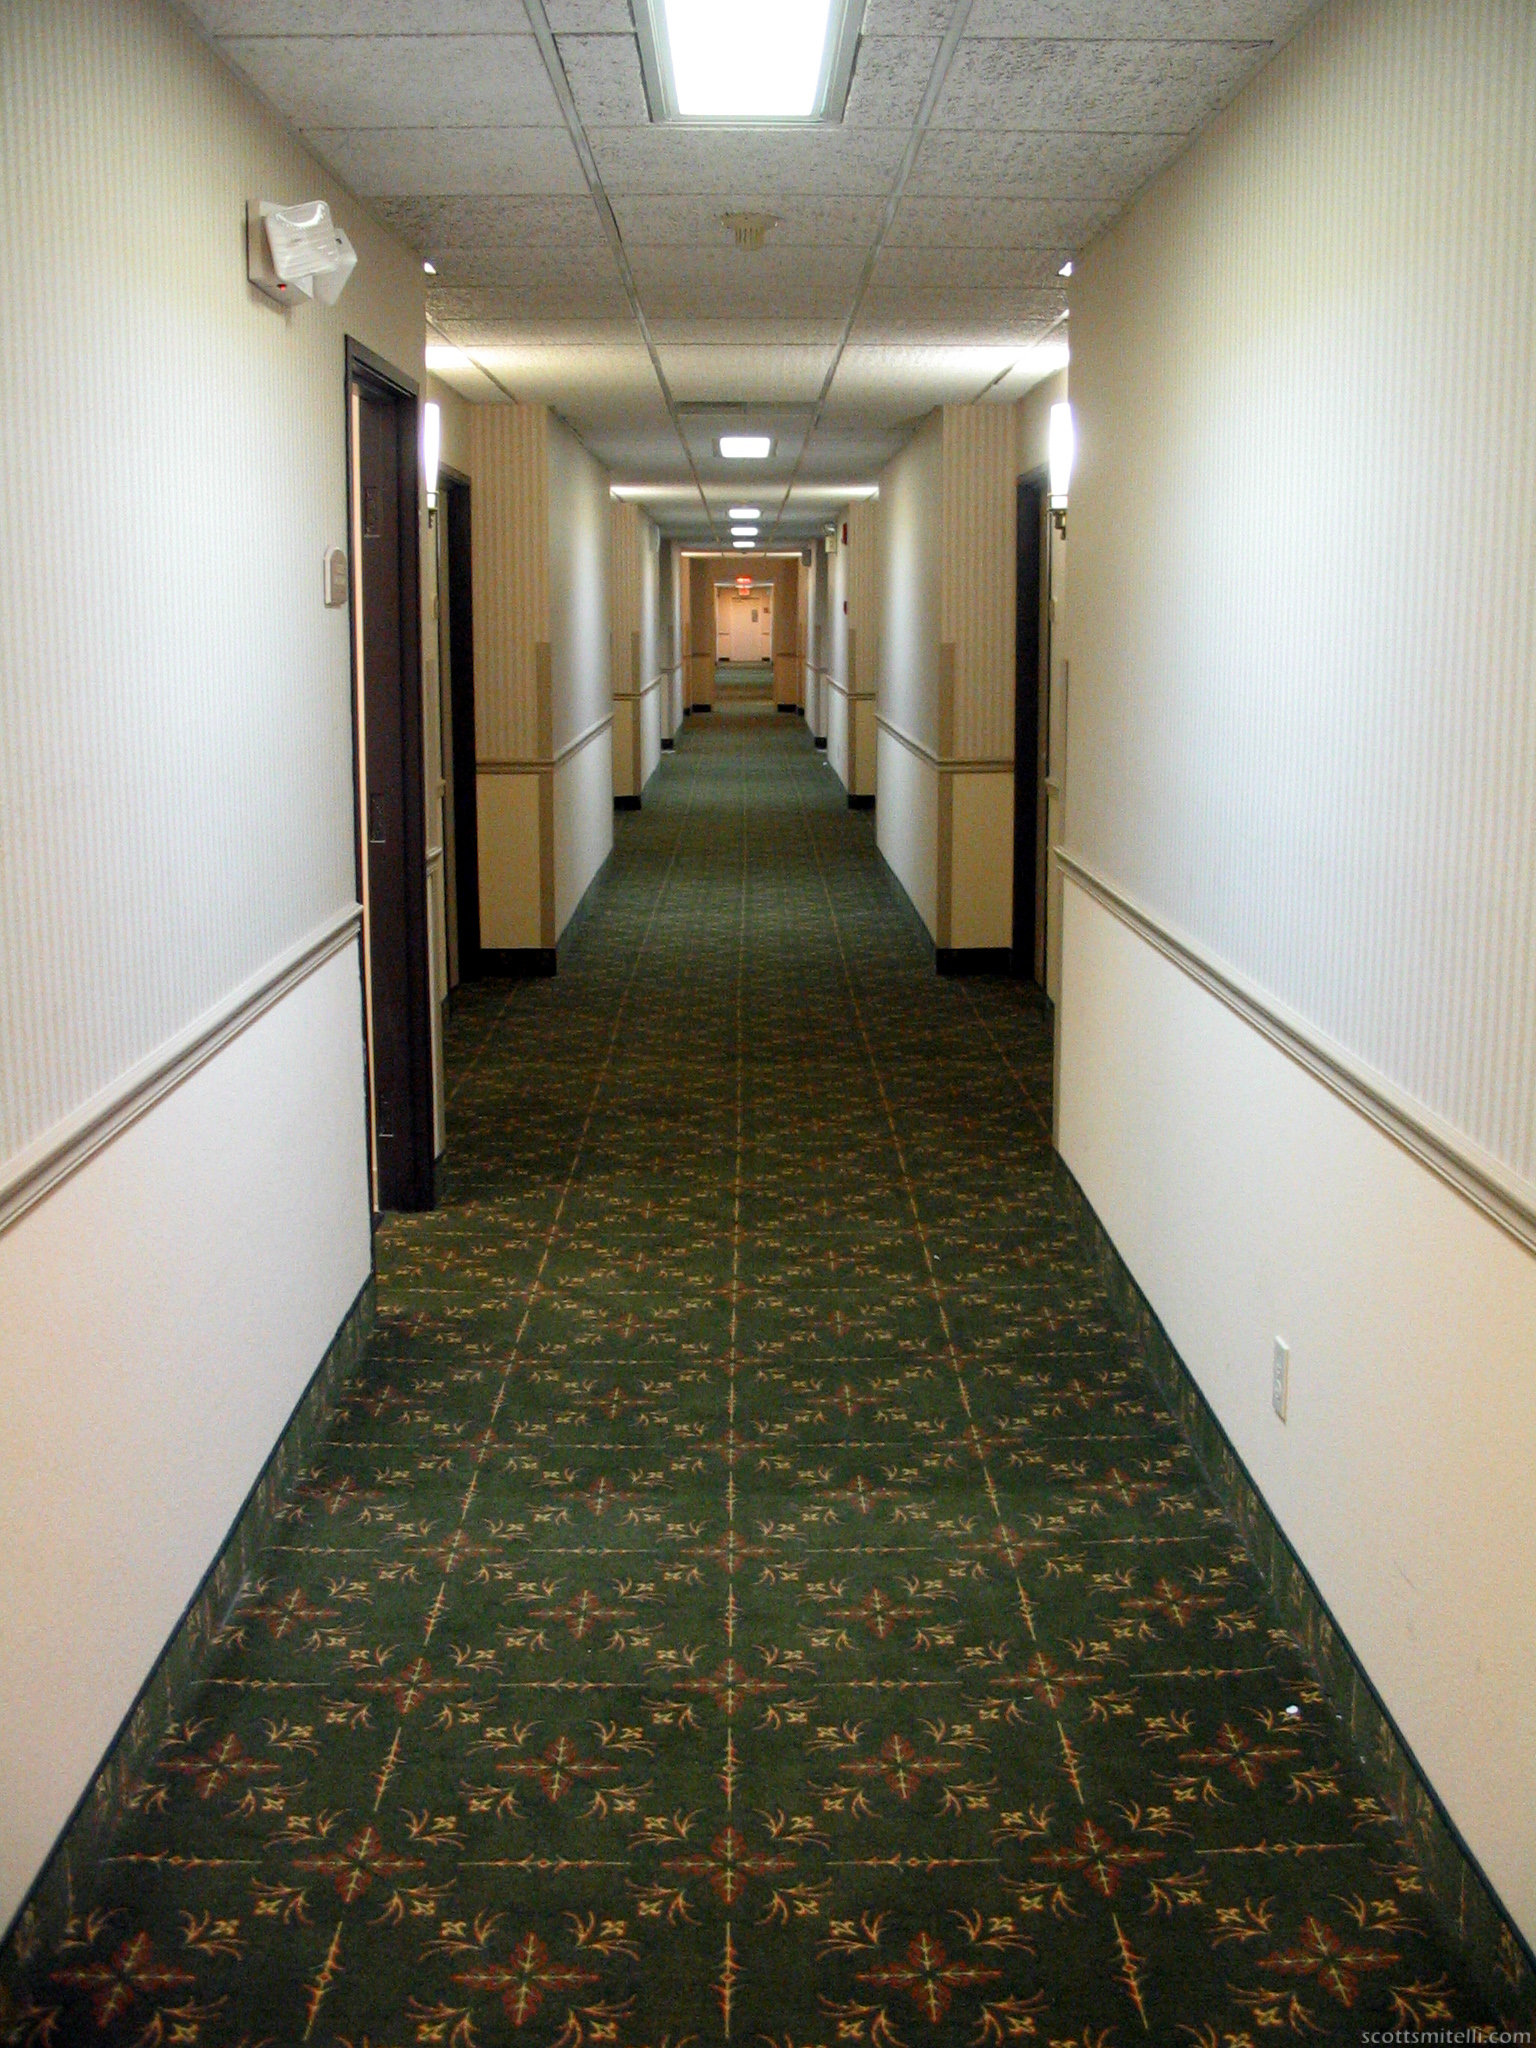 Memories of a Hallway